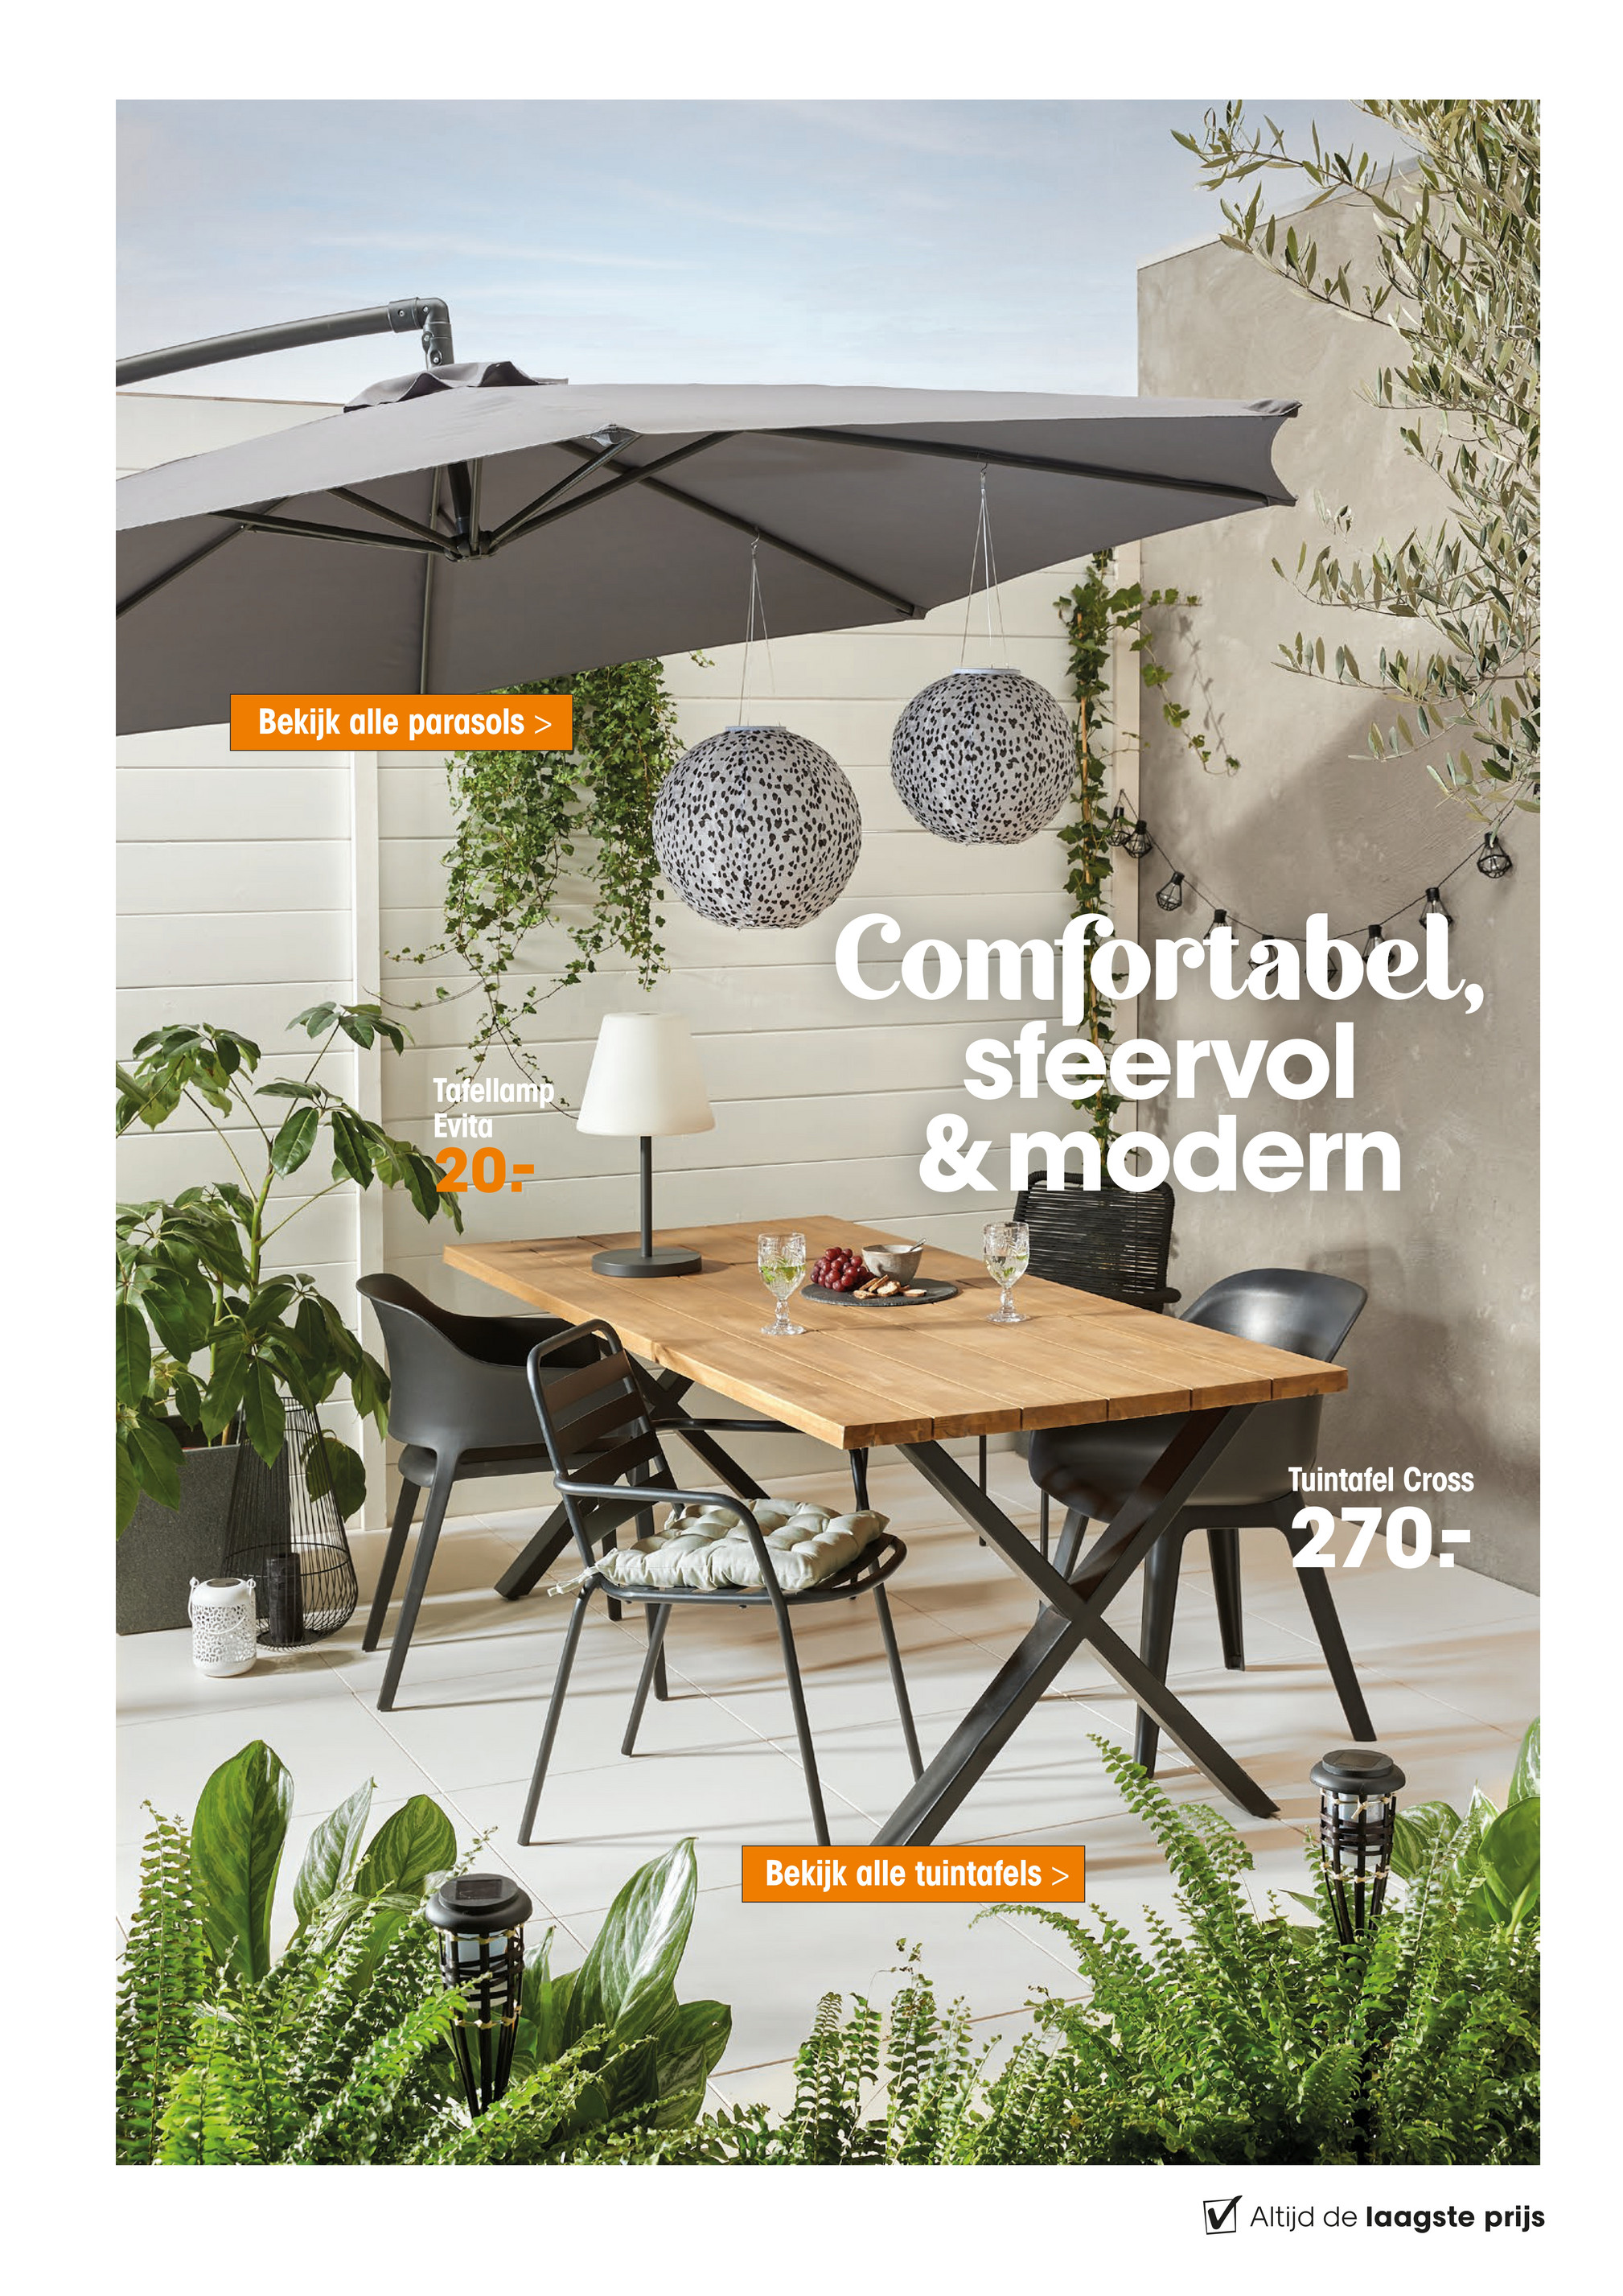 logboek Saga bord Kwantum Magazine NL - Tuinmagazine 2021 - Tuintafel Cross